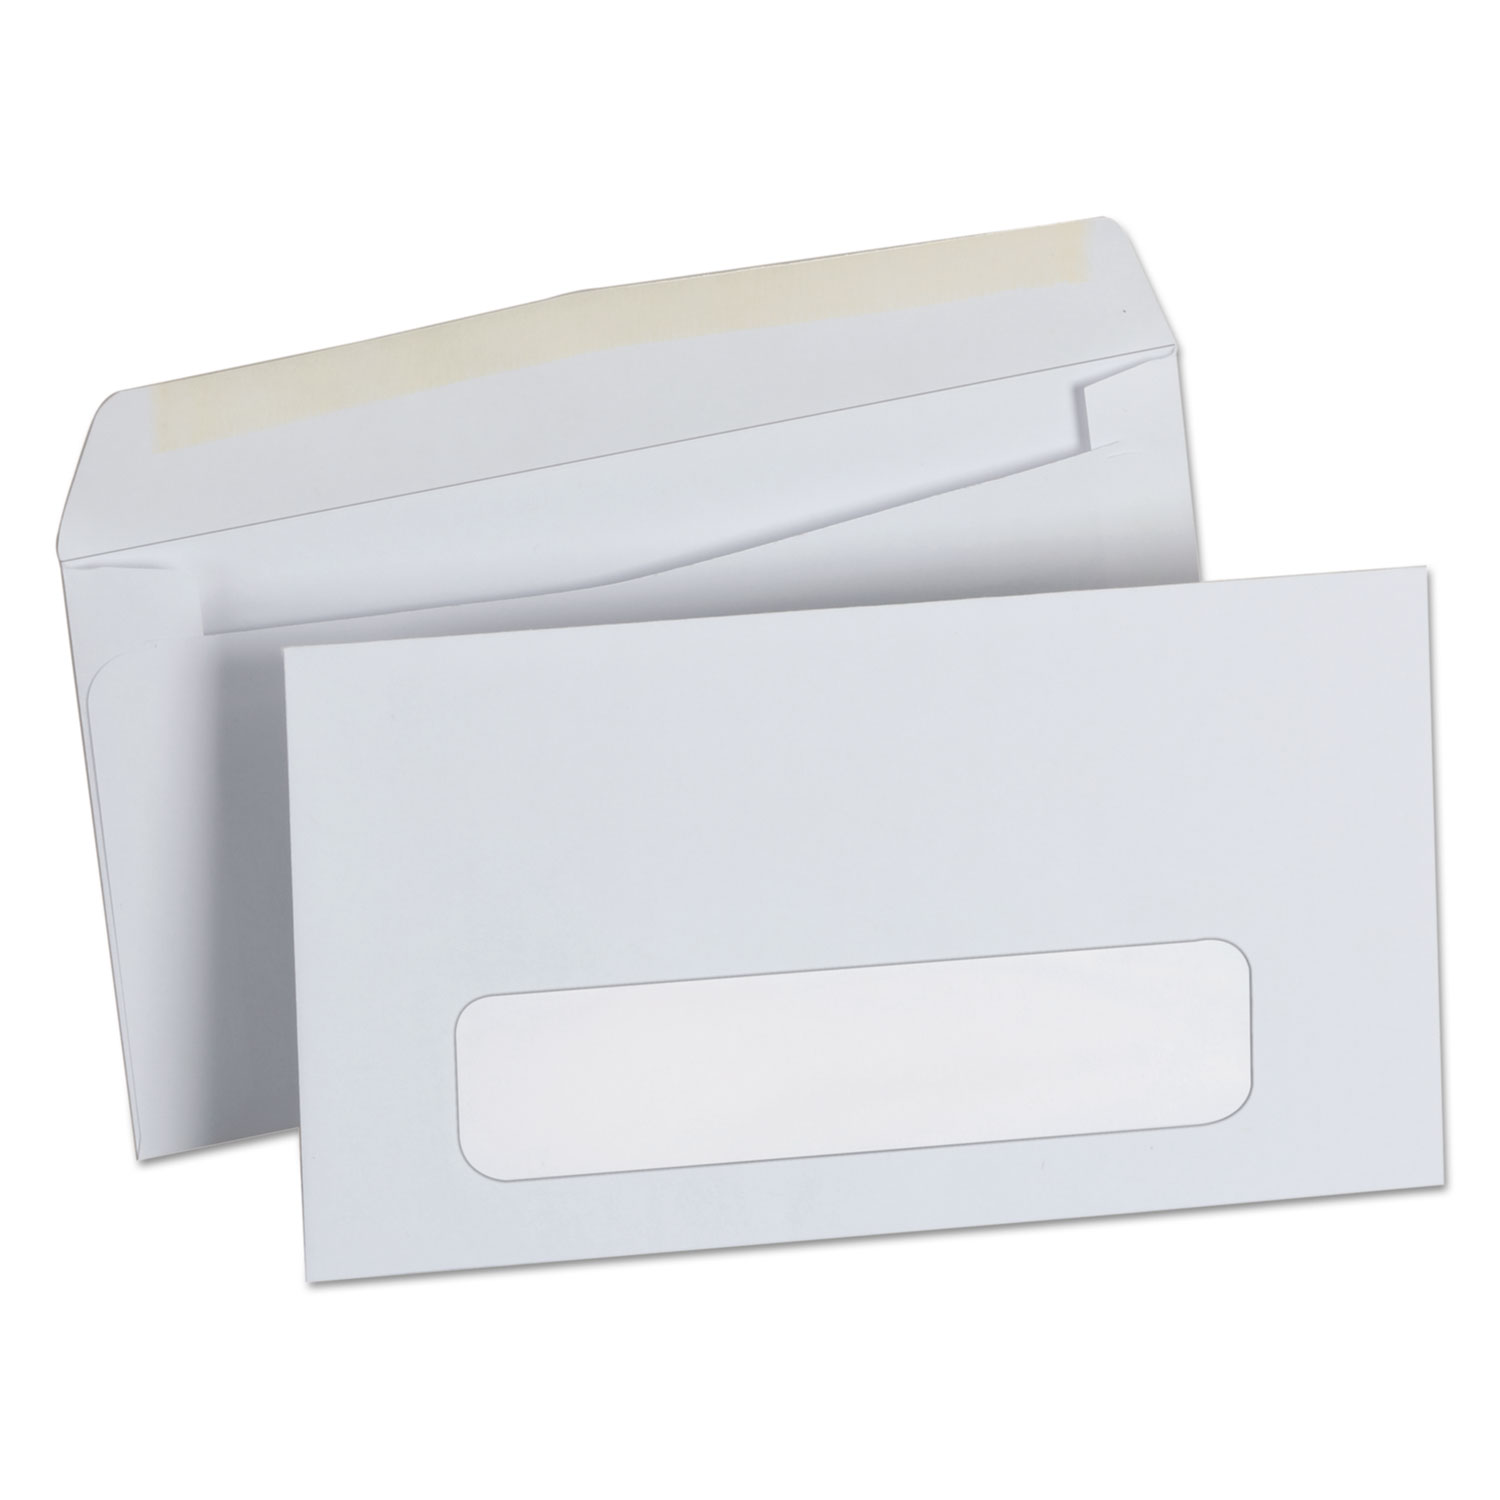  Universal UNV35216 Business Envelope, #6 3/4, Square Flap, Gummed Closure, 3.63 x 6.5, White, 500/Box (UNV35216) 